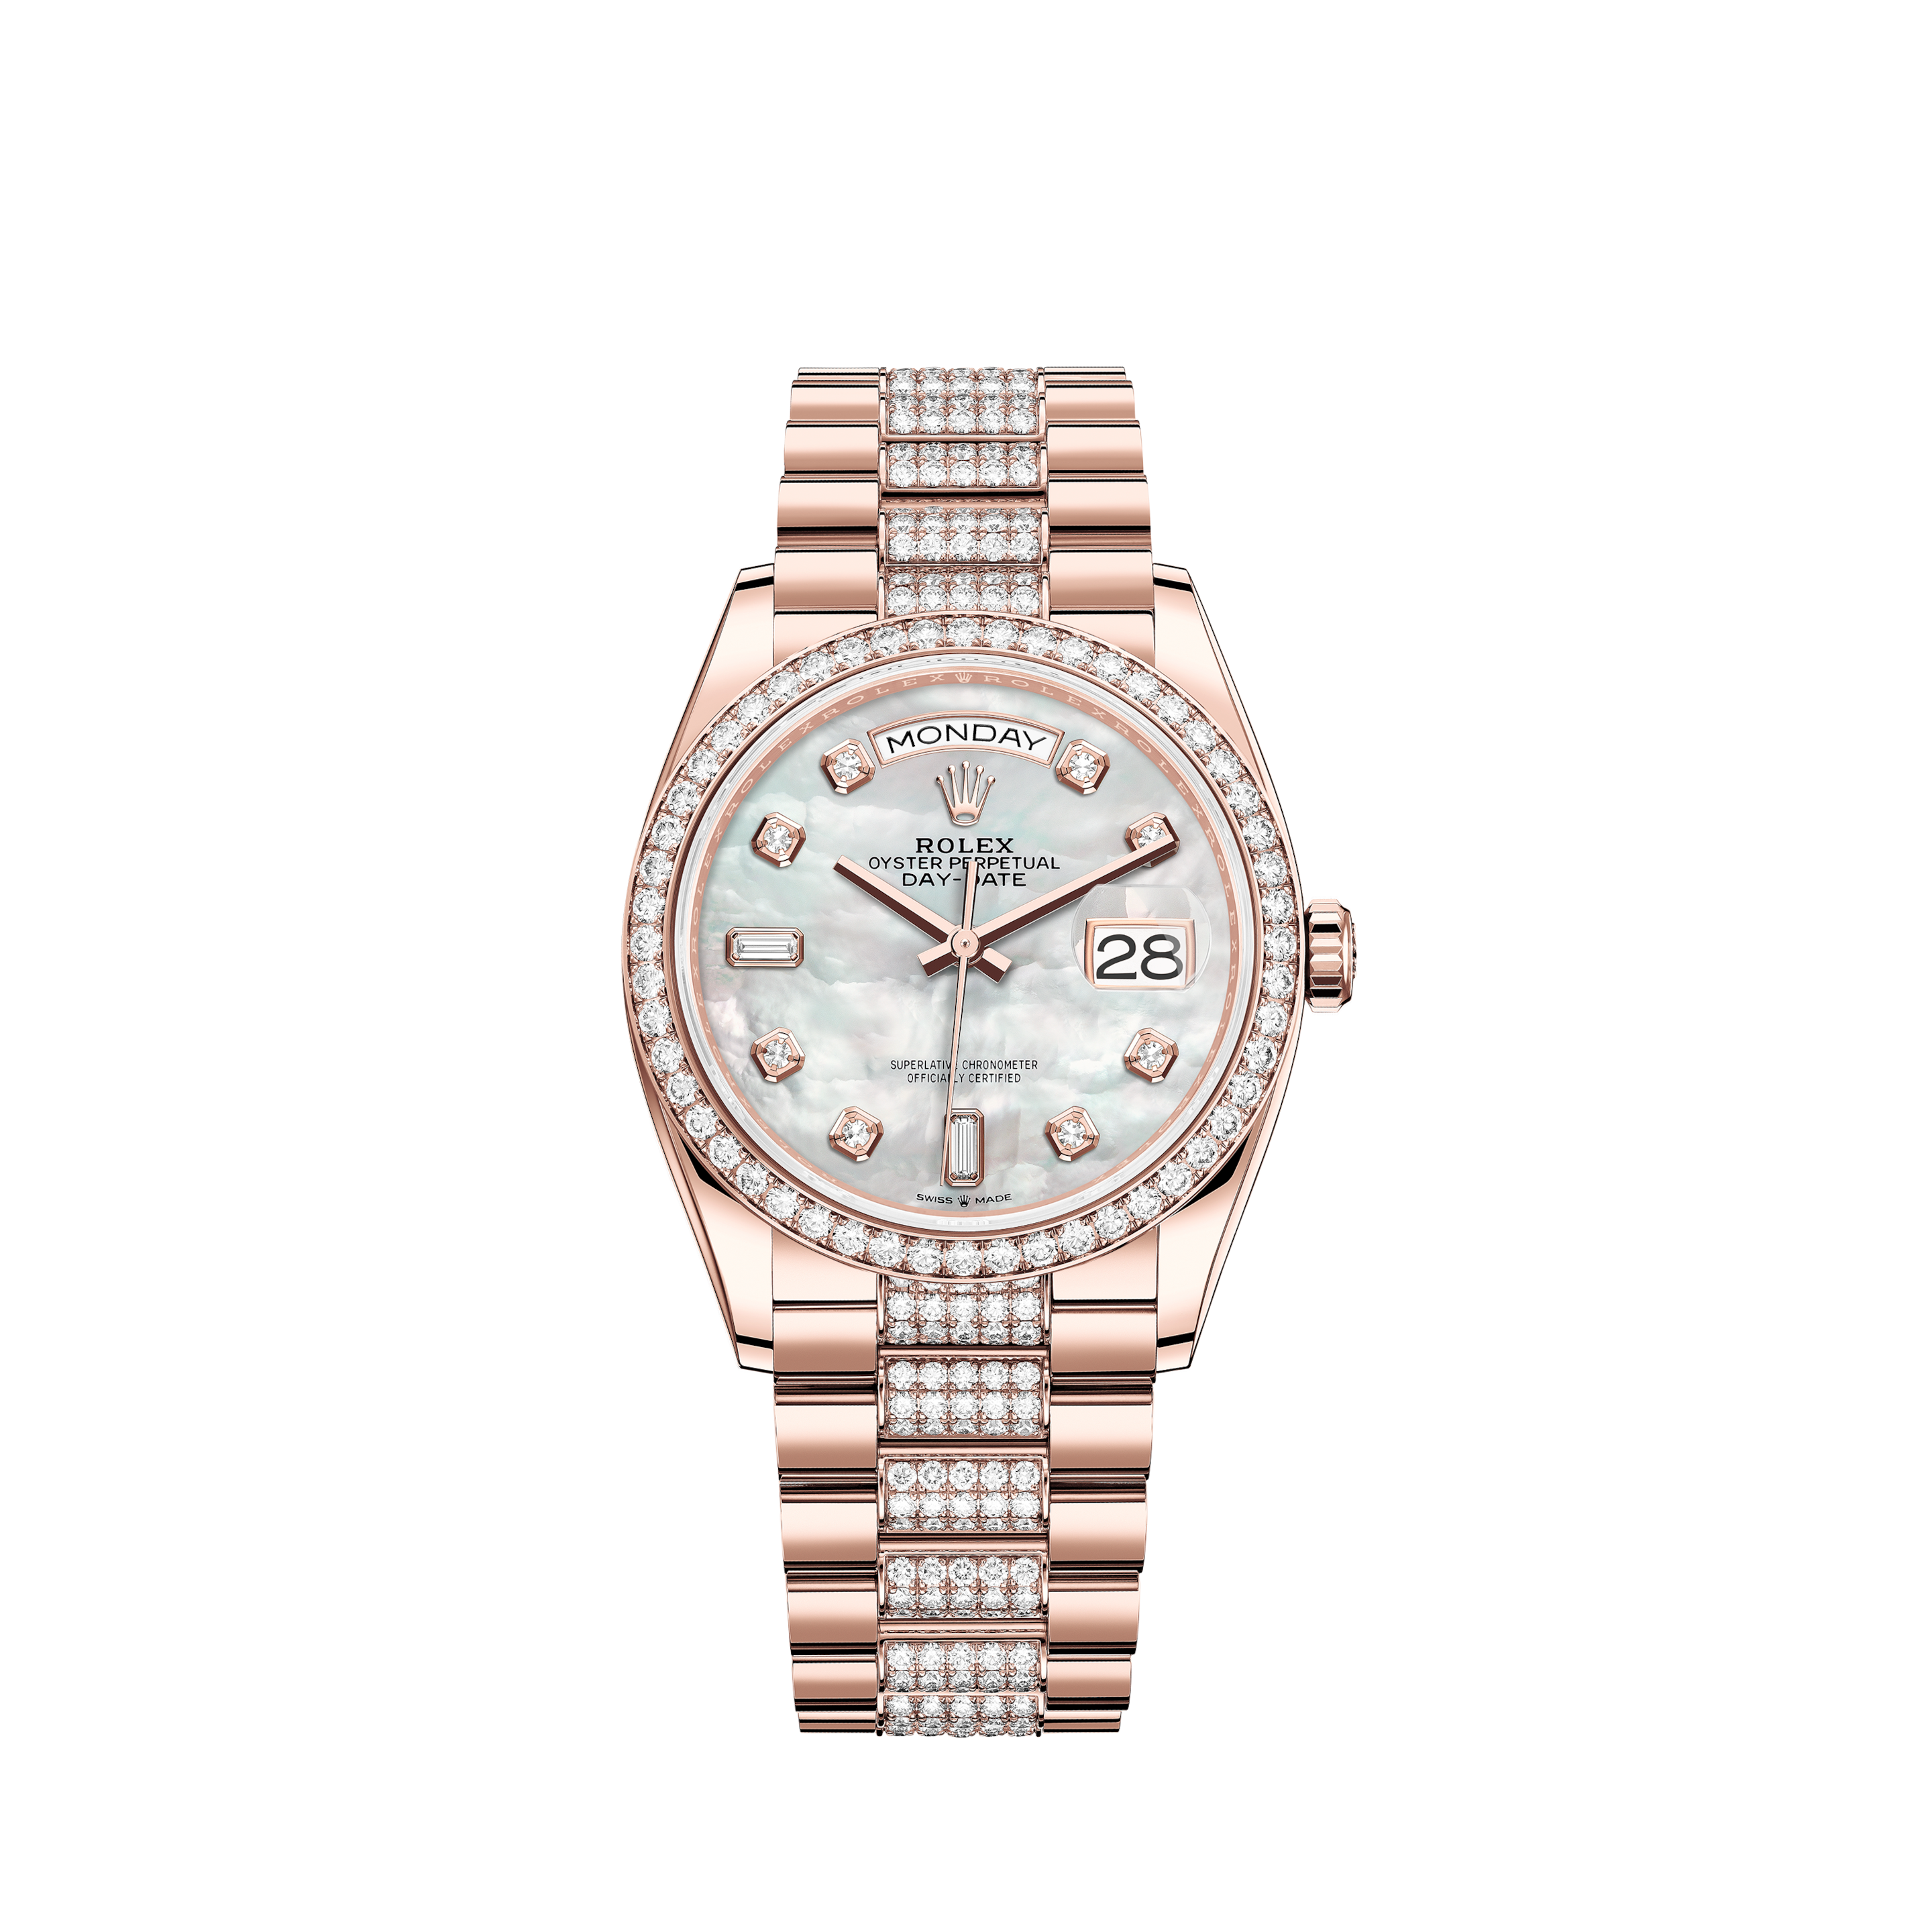 Rolex Rolex Rolex Daytona 116505 Black/Pink Dial Used Watches Men's Watches